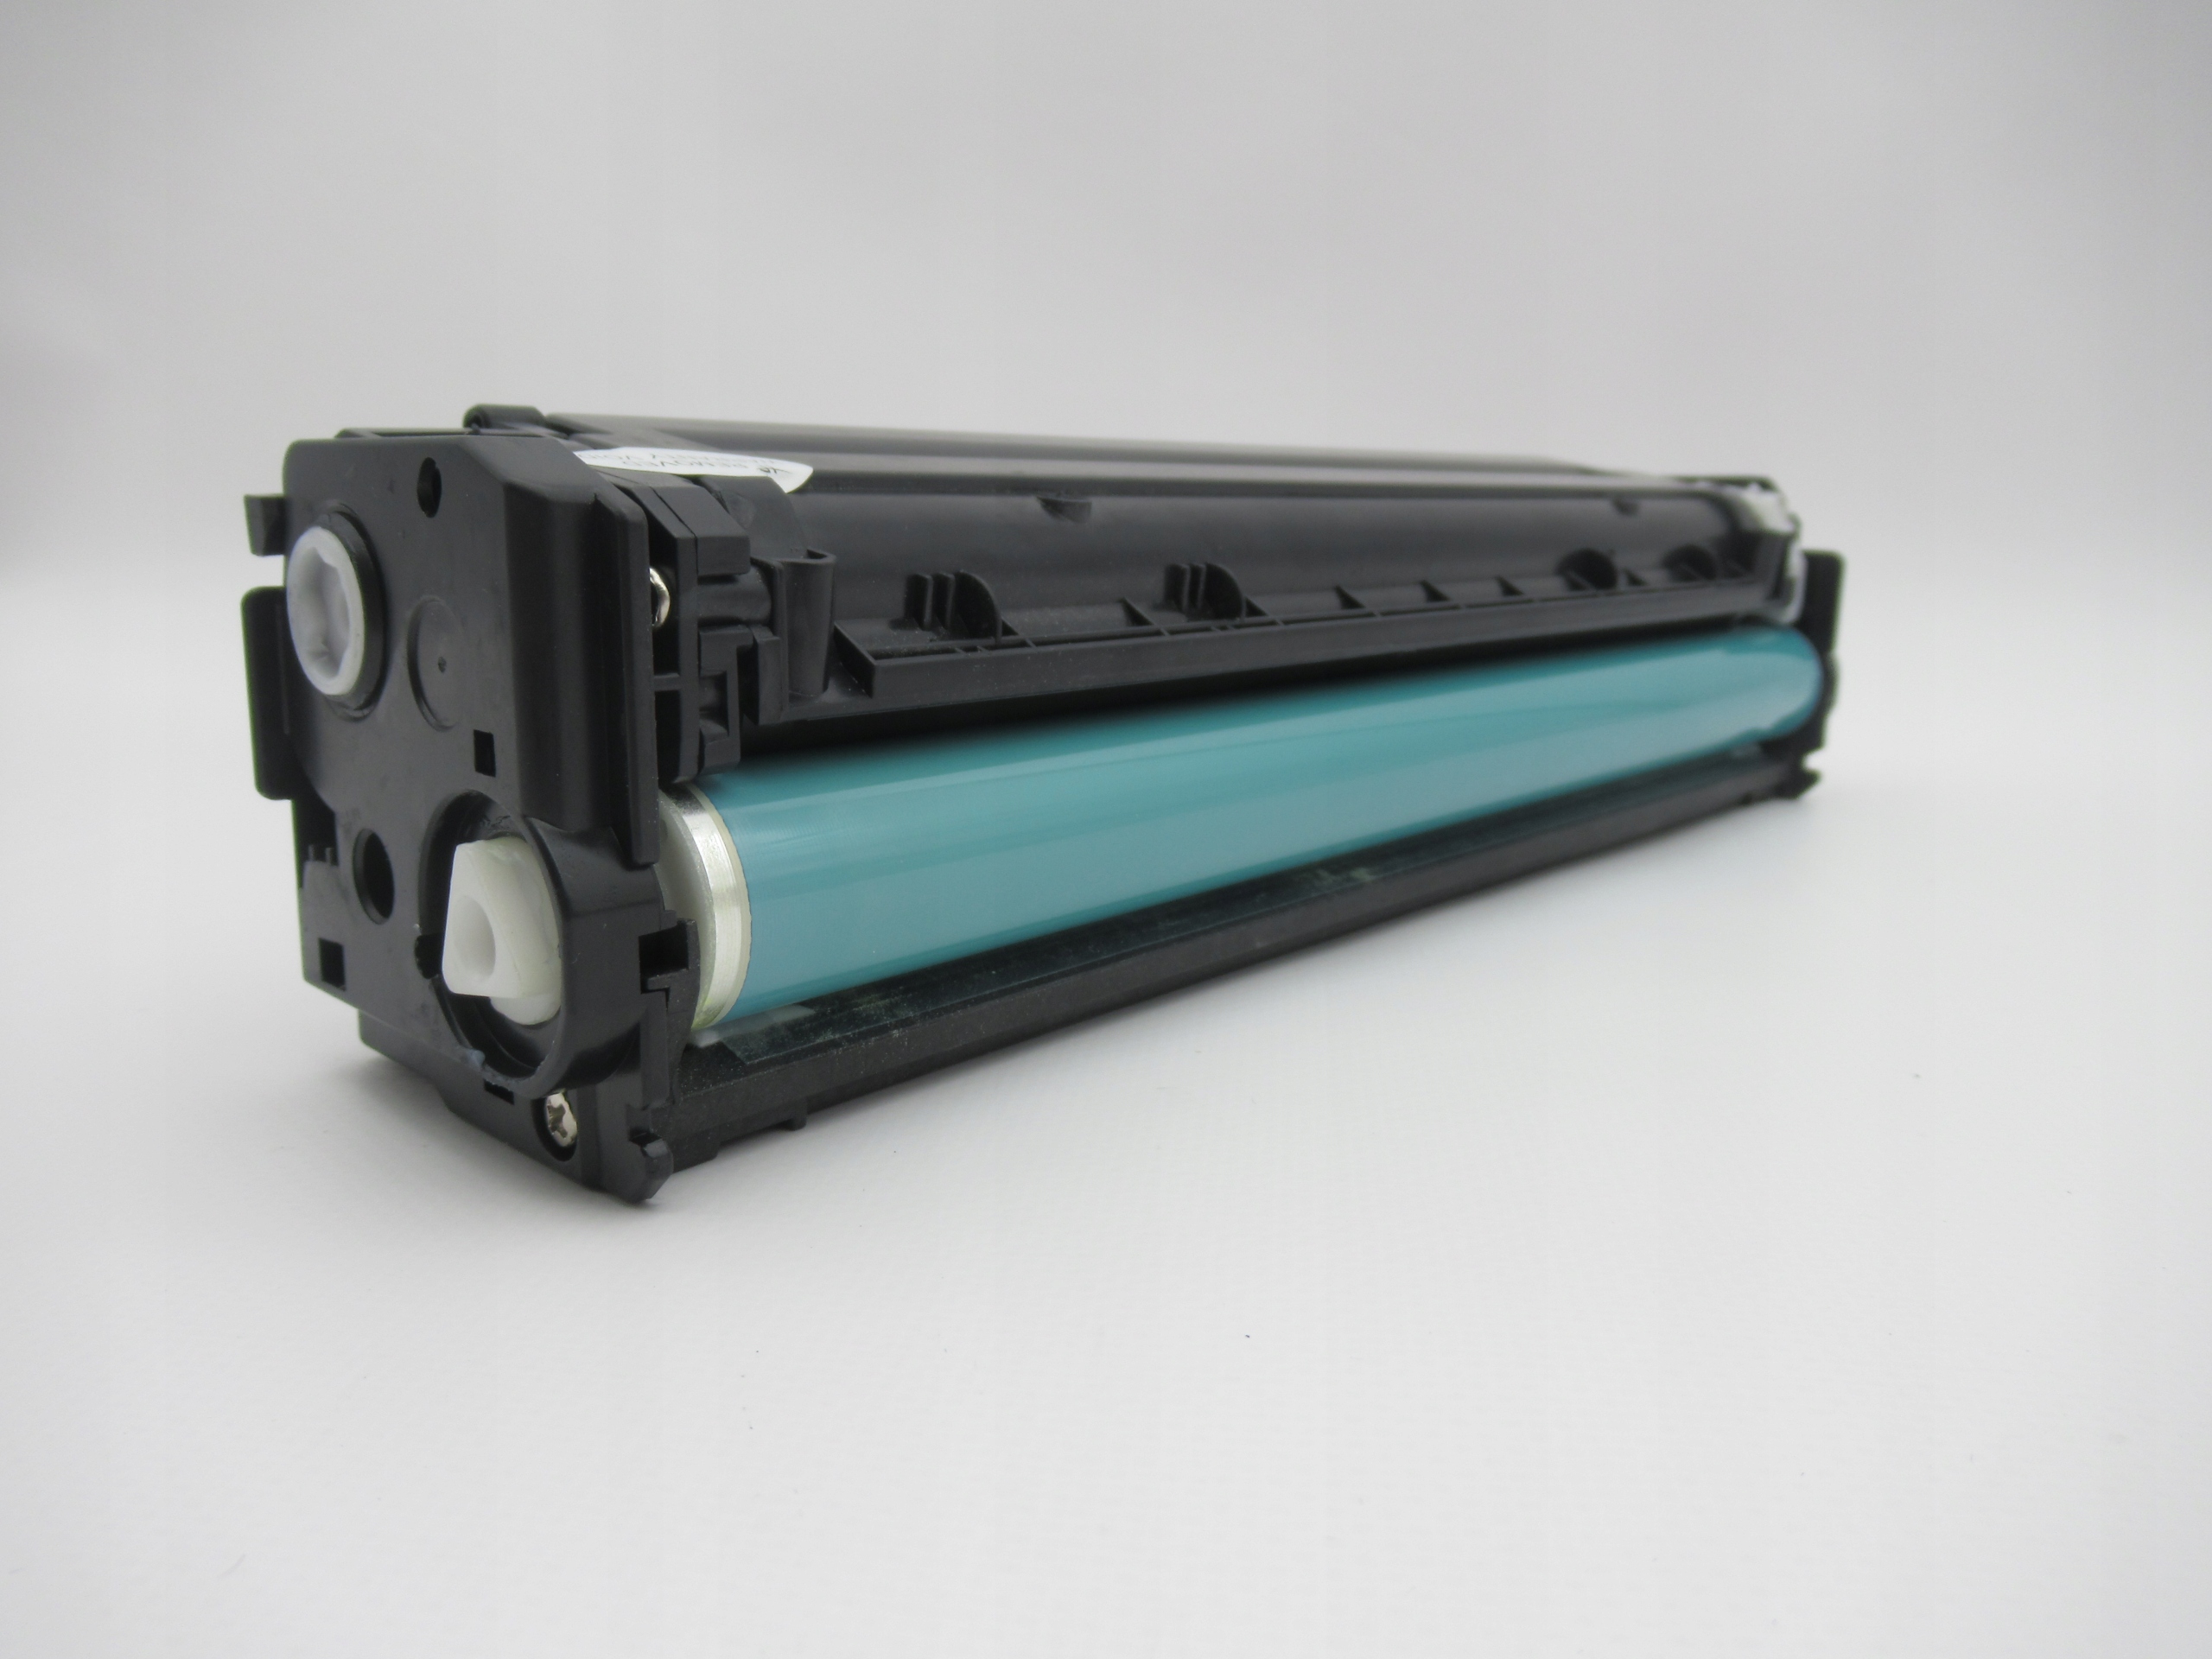 Aster Toner Ink Cartridge for HP LaserJet Pro 200 color M251n/ M251nw,MFP M276n/ 